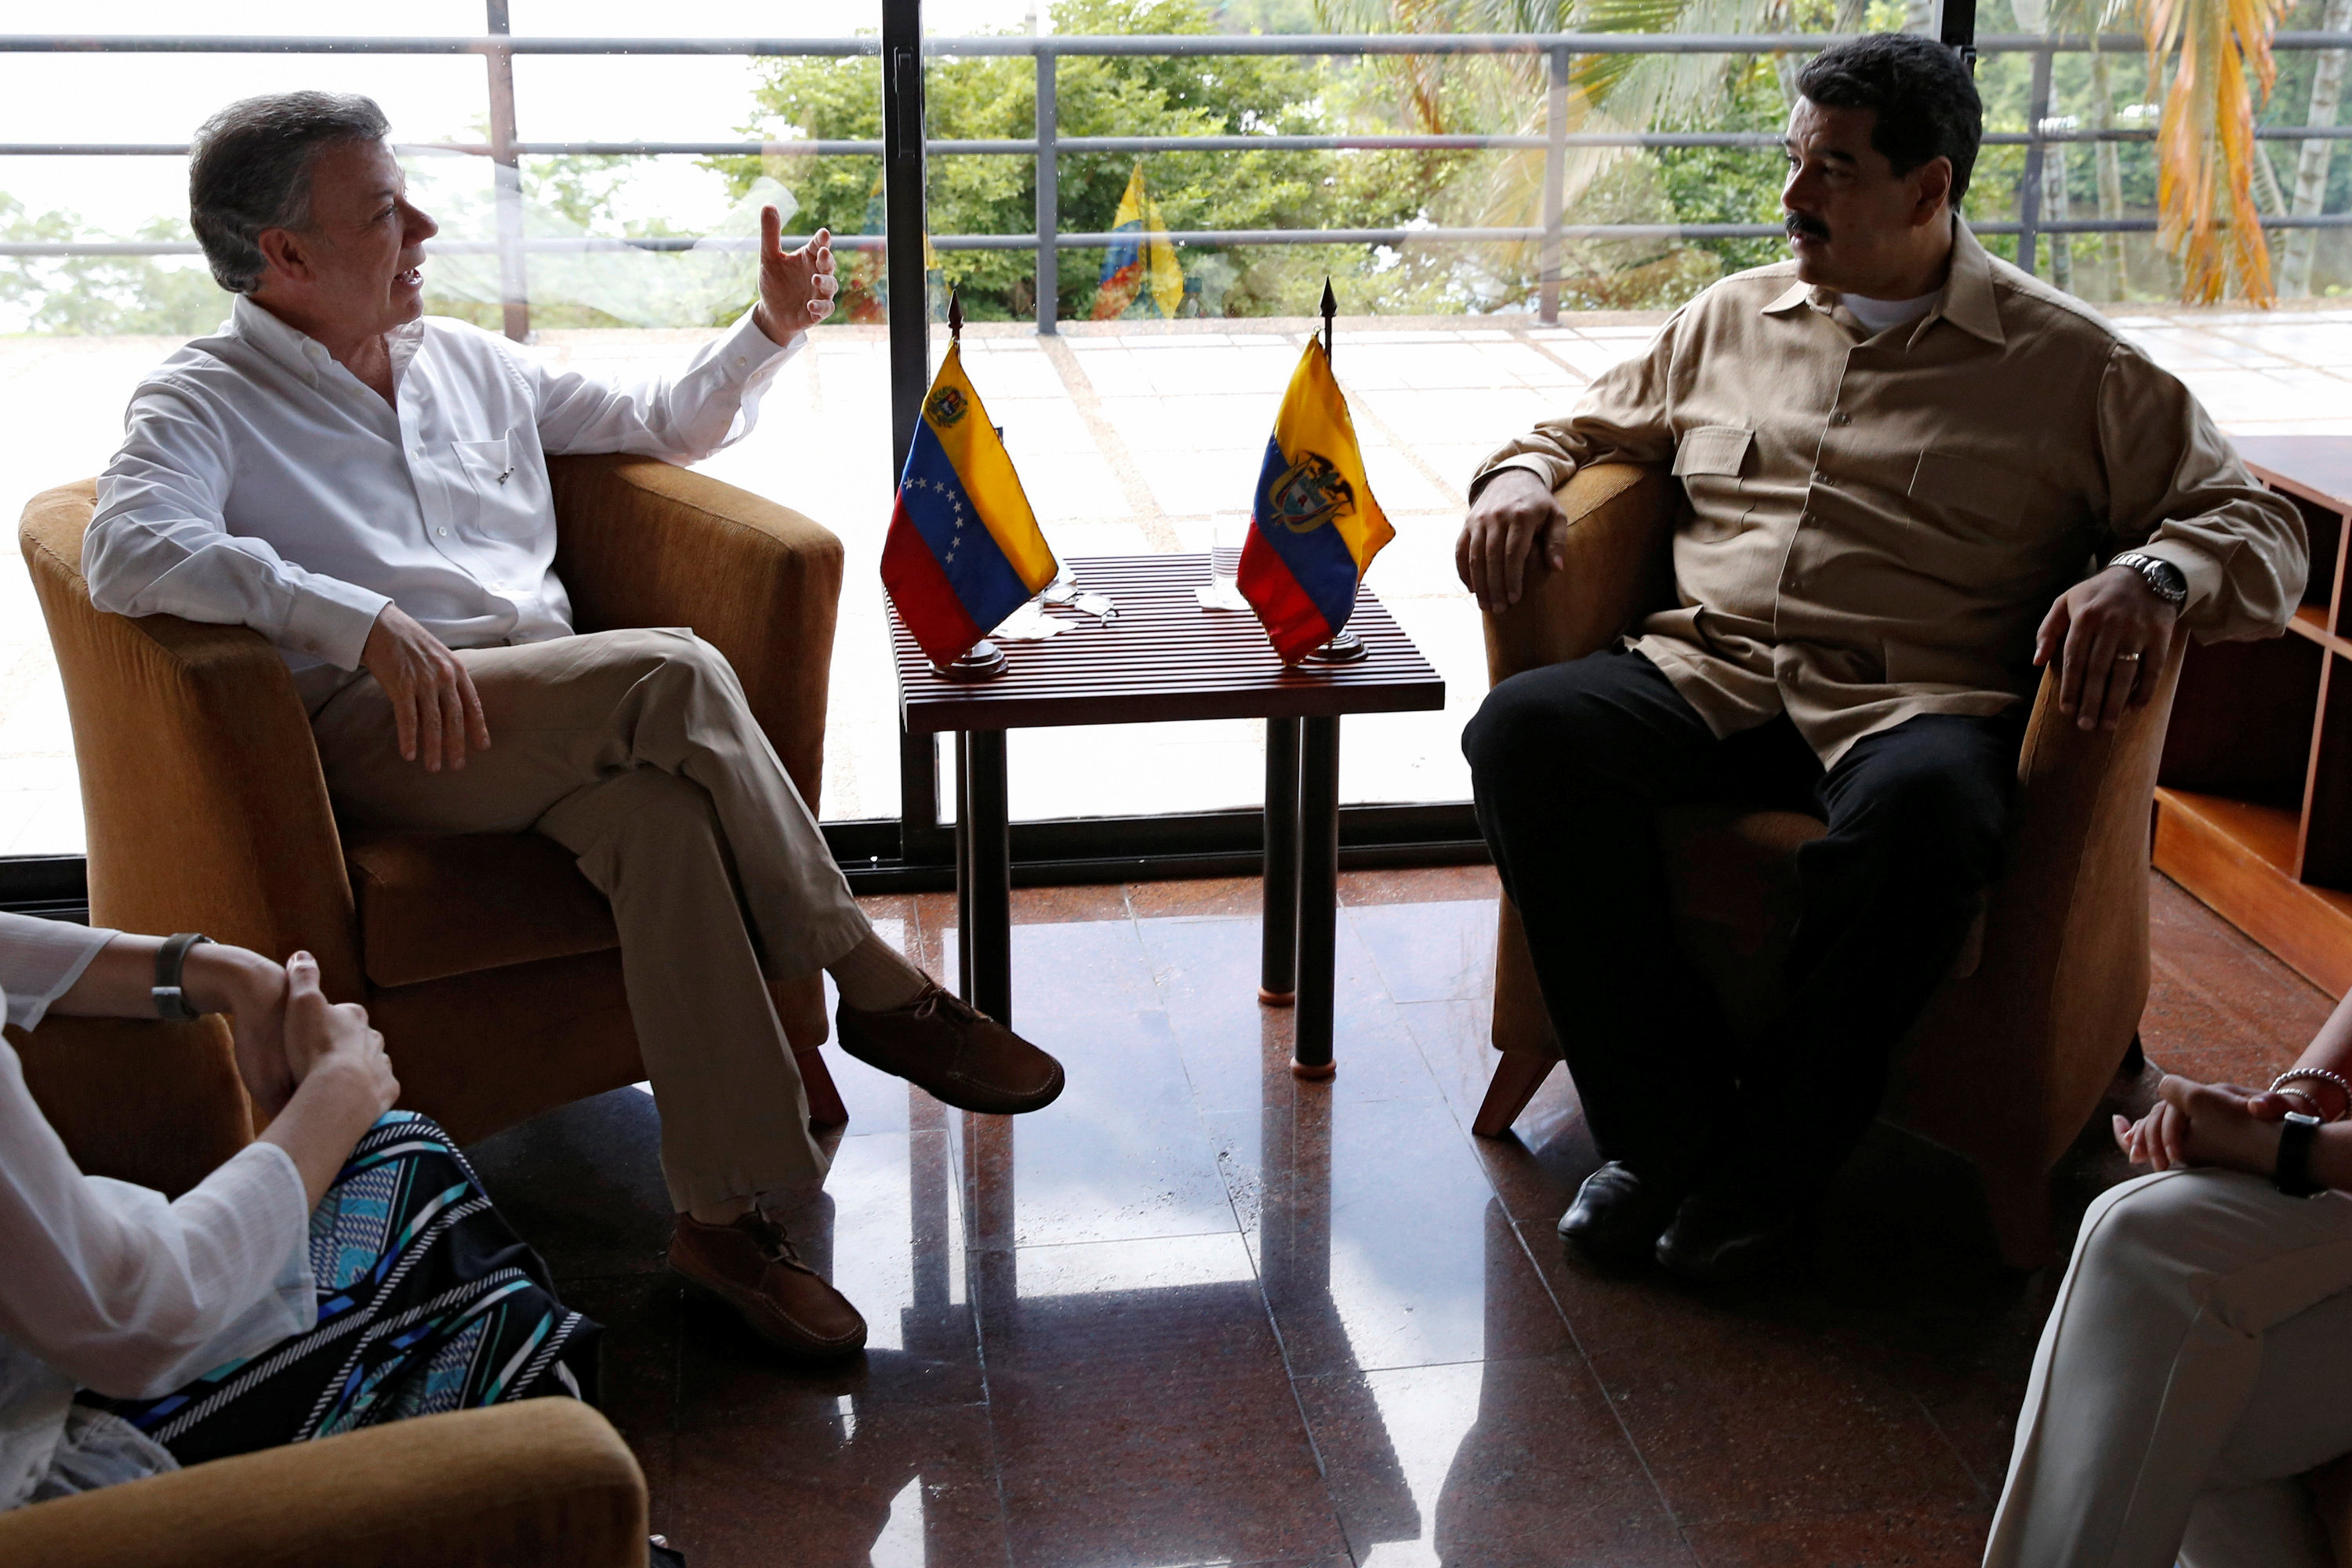 LAS FOTOS: Santos y Maduro se reúnen lejos de la frontera para discutir reapertura de la frontera